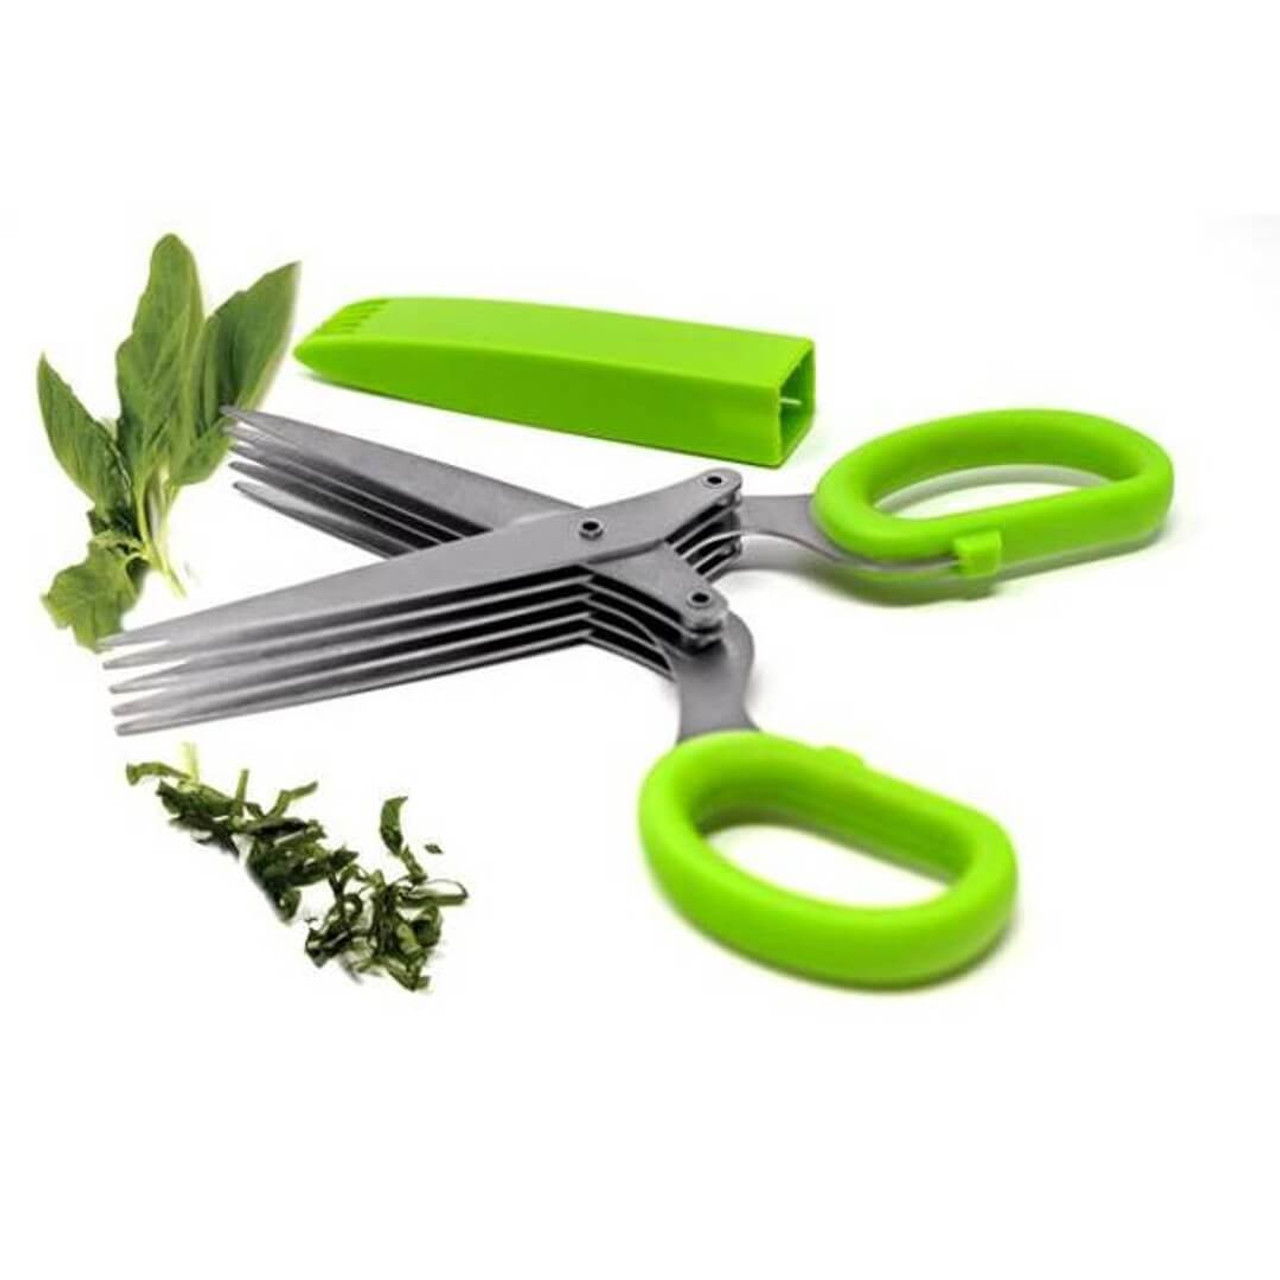 Triple Blade Herb Scissors by Norpro